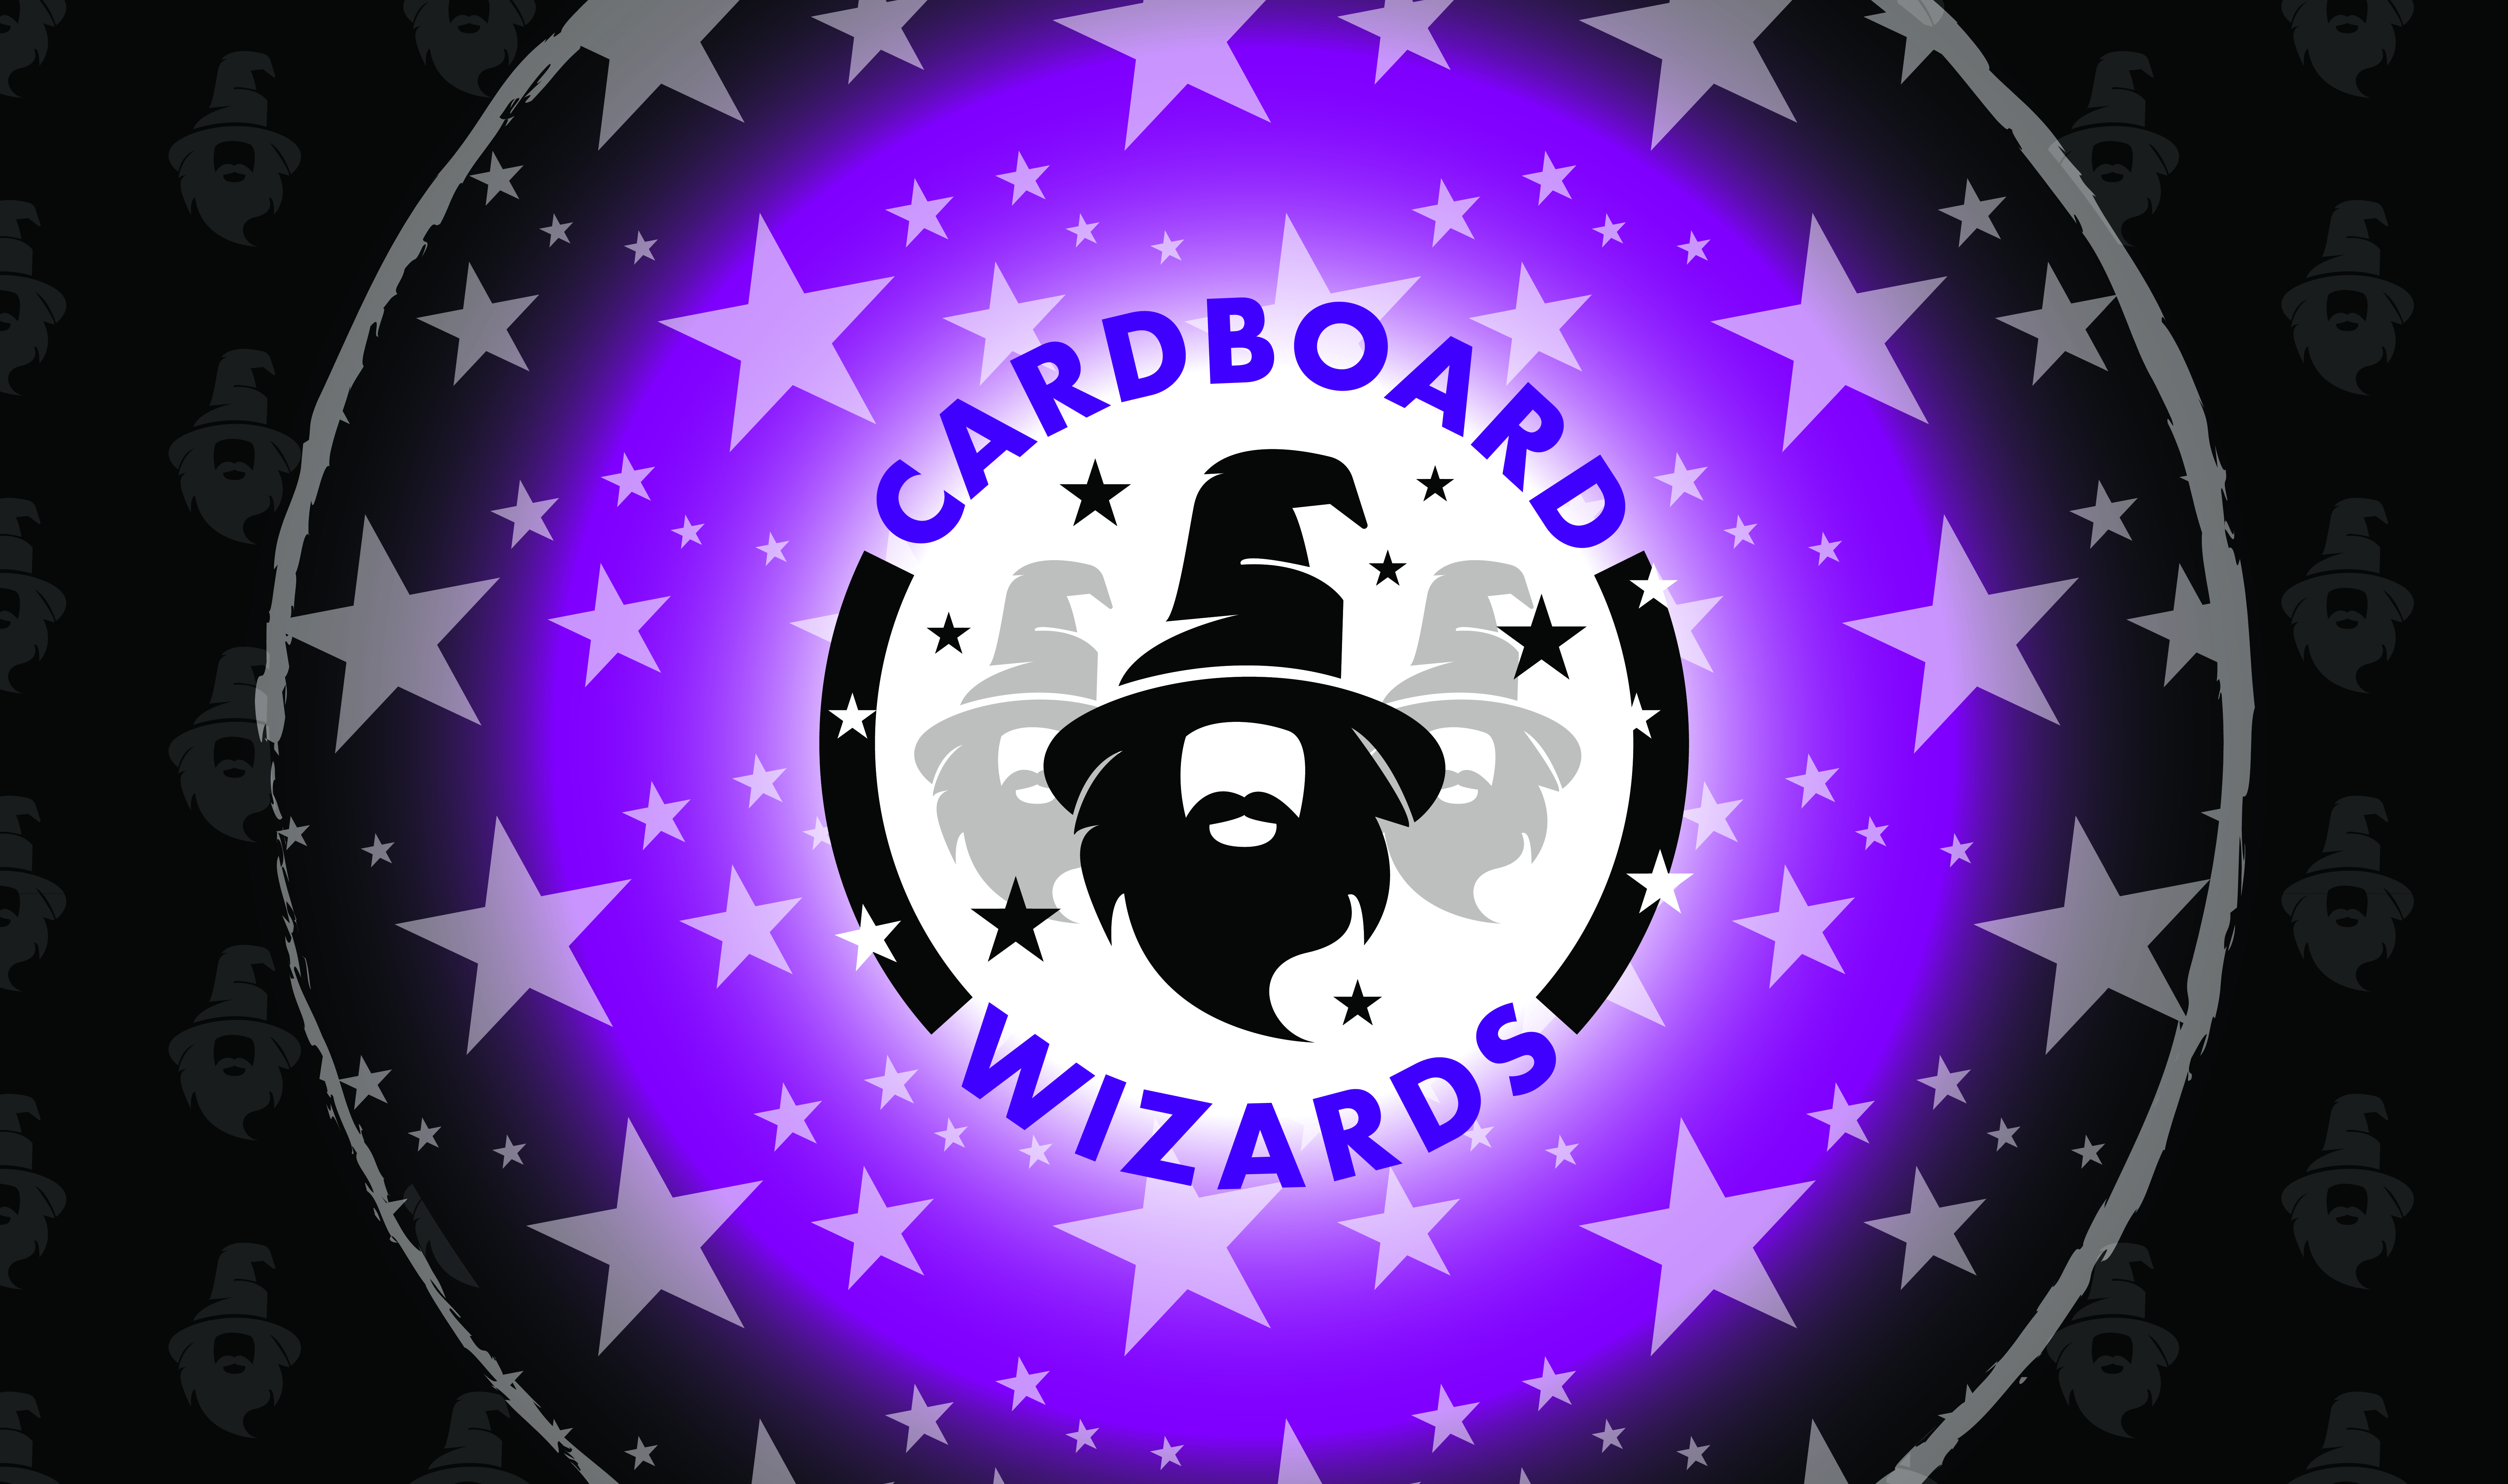 Cardboard Wizards